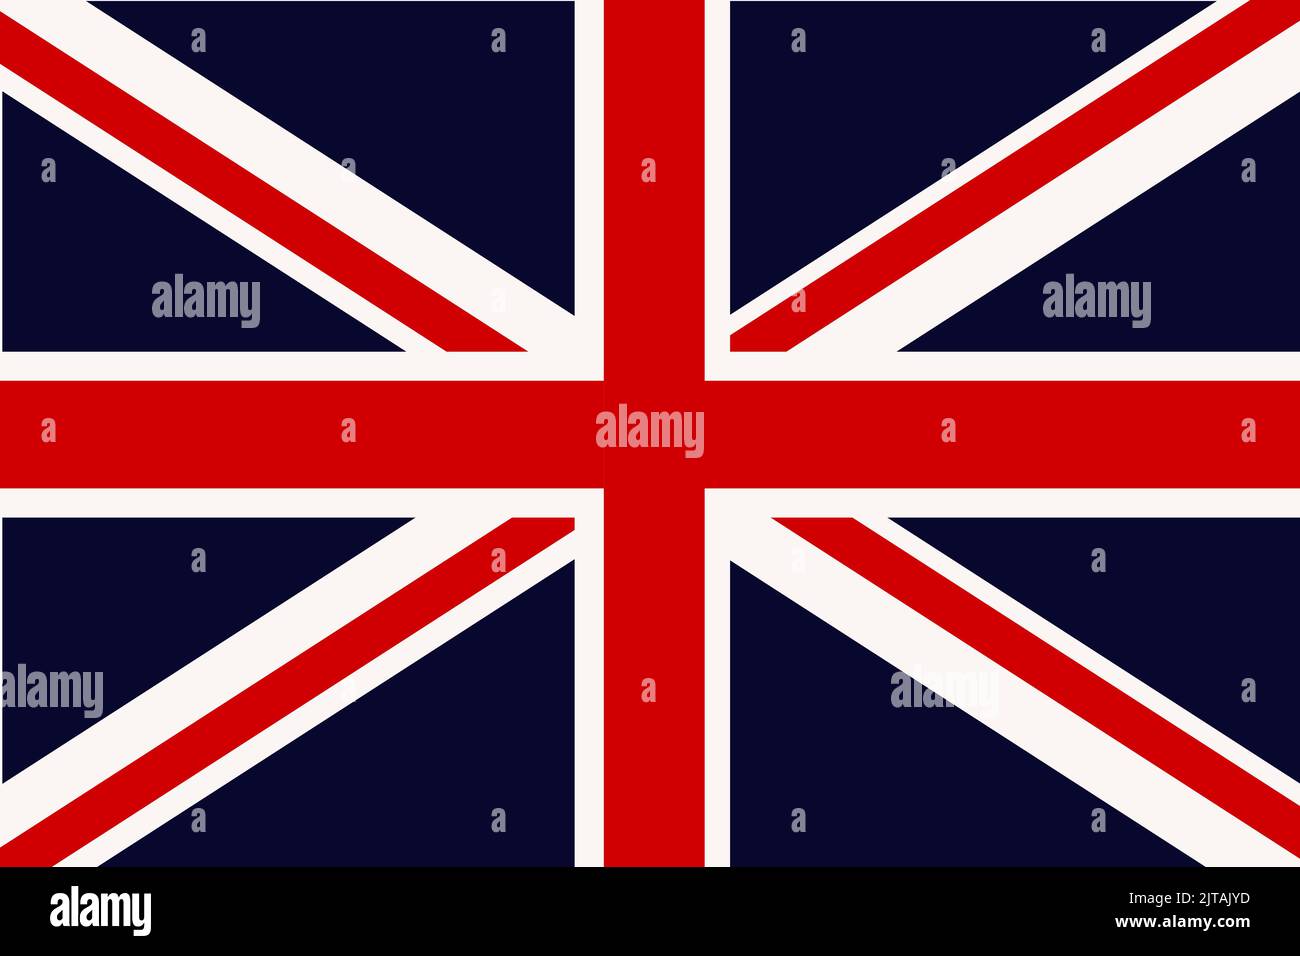 Illustrazione vettoriale della bandiera britannica. Bandiera del Regno Unito di Gran Bretagna e Irlanda del Nord. Simbolo dello stato in colori nazionali. Illustrazione Vettoriale